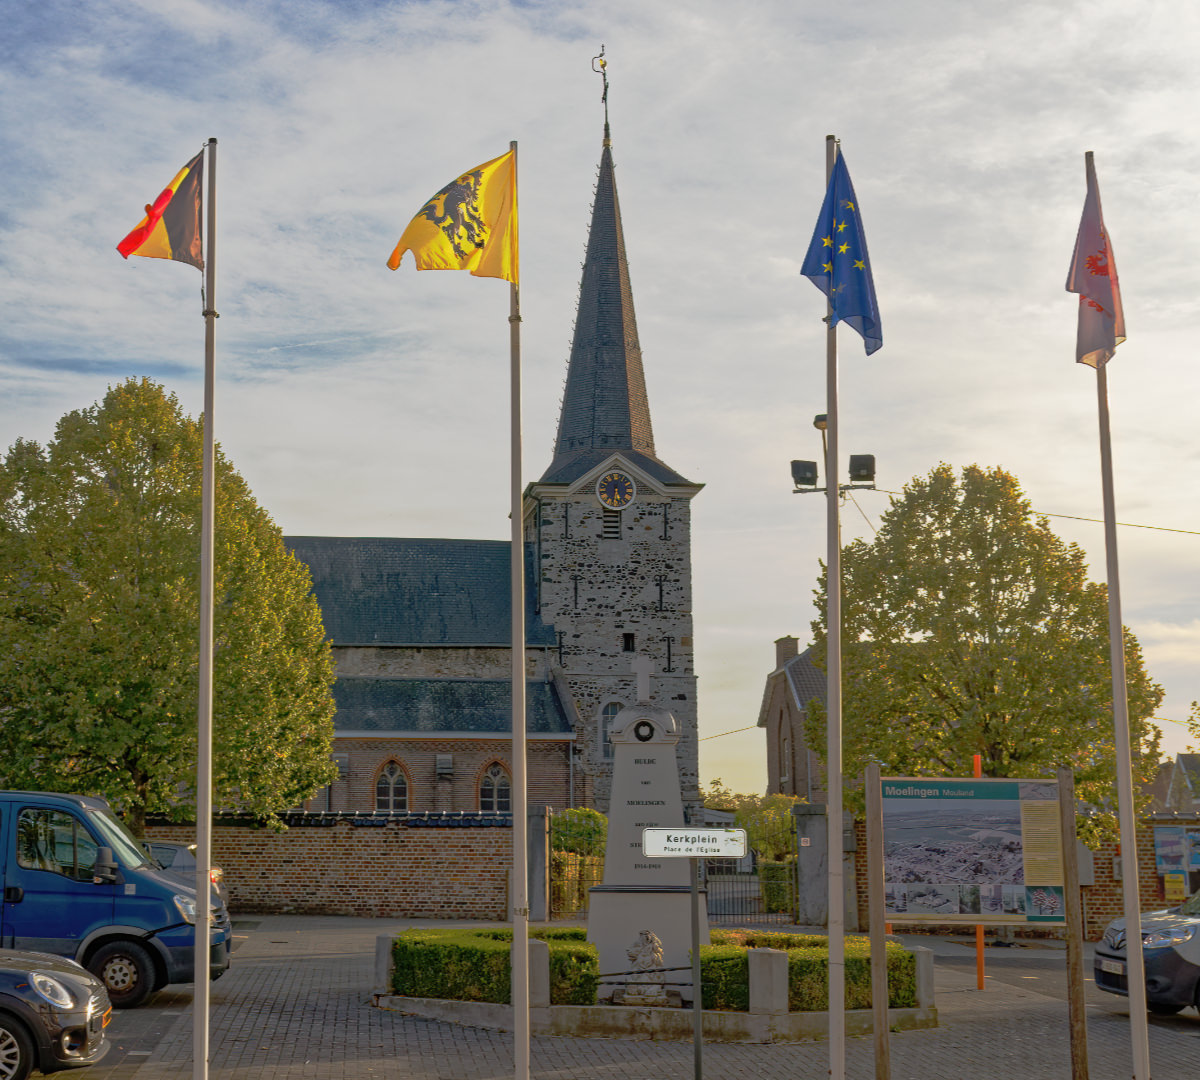 Small photo of Moelingen in the Voer region Belgium